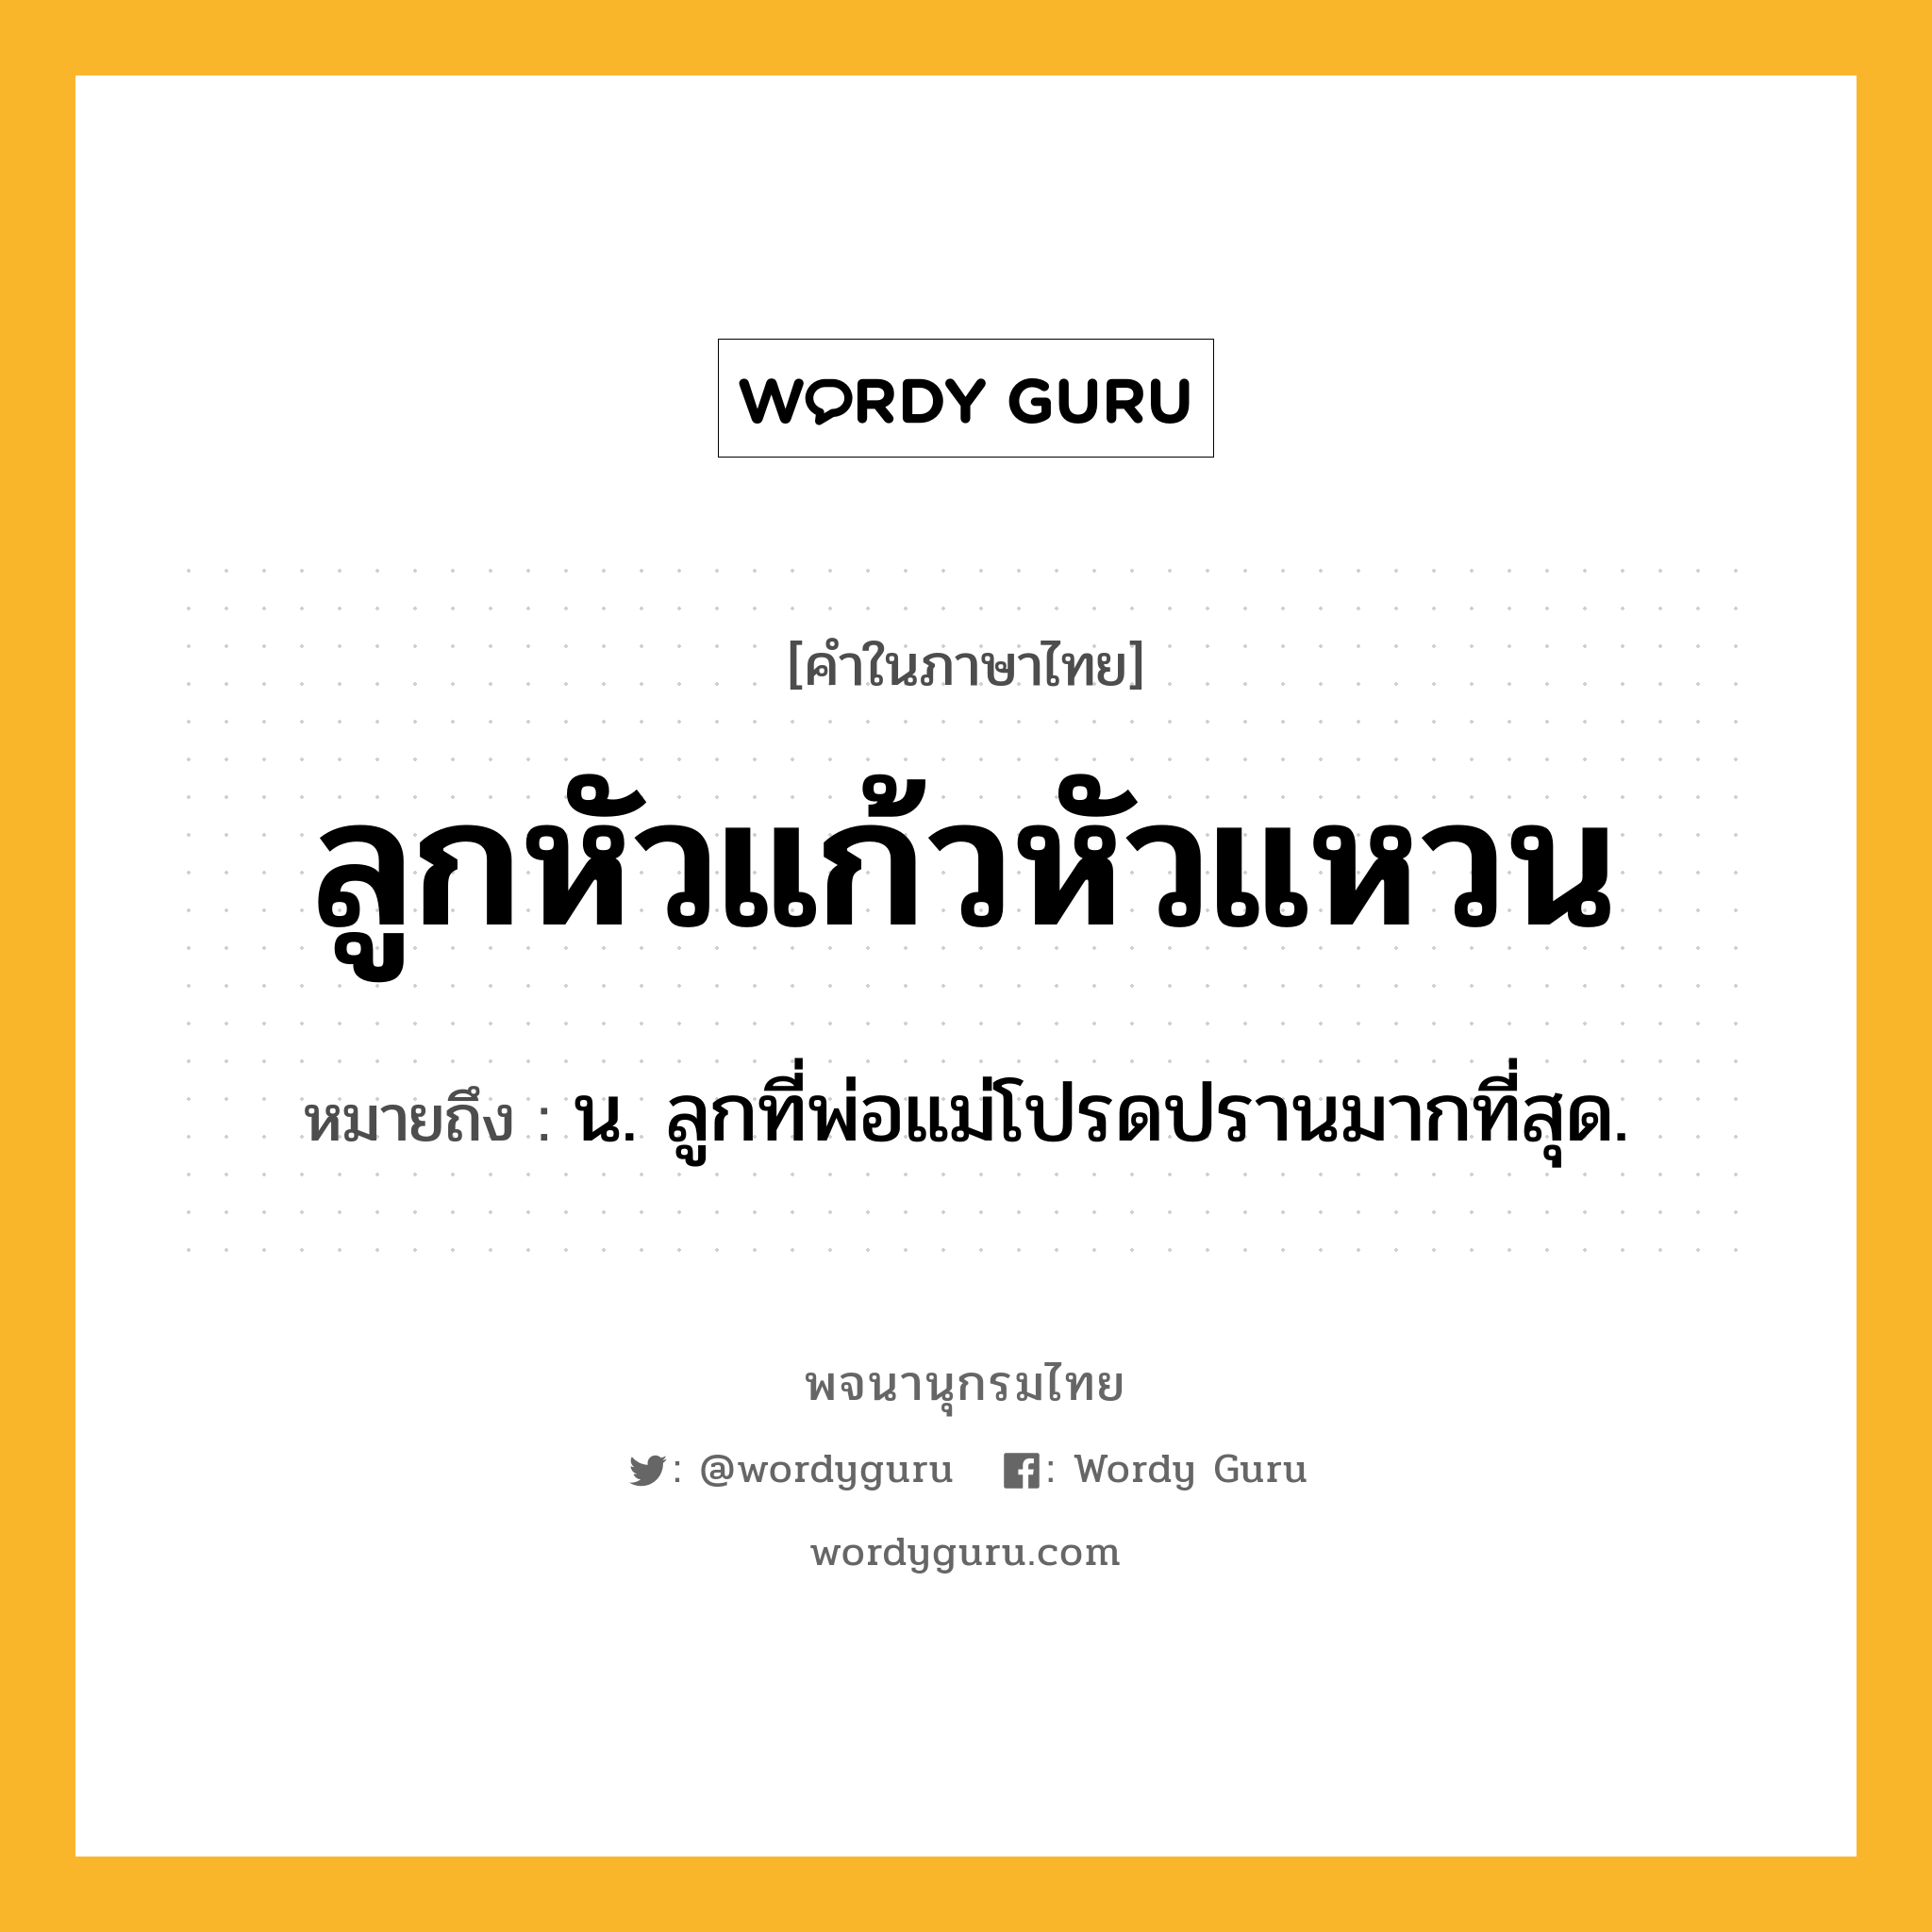 ลูกหัวแก้วหัวแหวน หมายถึงอะไร?, คำในภาษาไทย ลูกหัวแก้วหัวแหวน หมายถึง น. ลูกที่พ่อแม่โปรดปรานมากที่สุด.